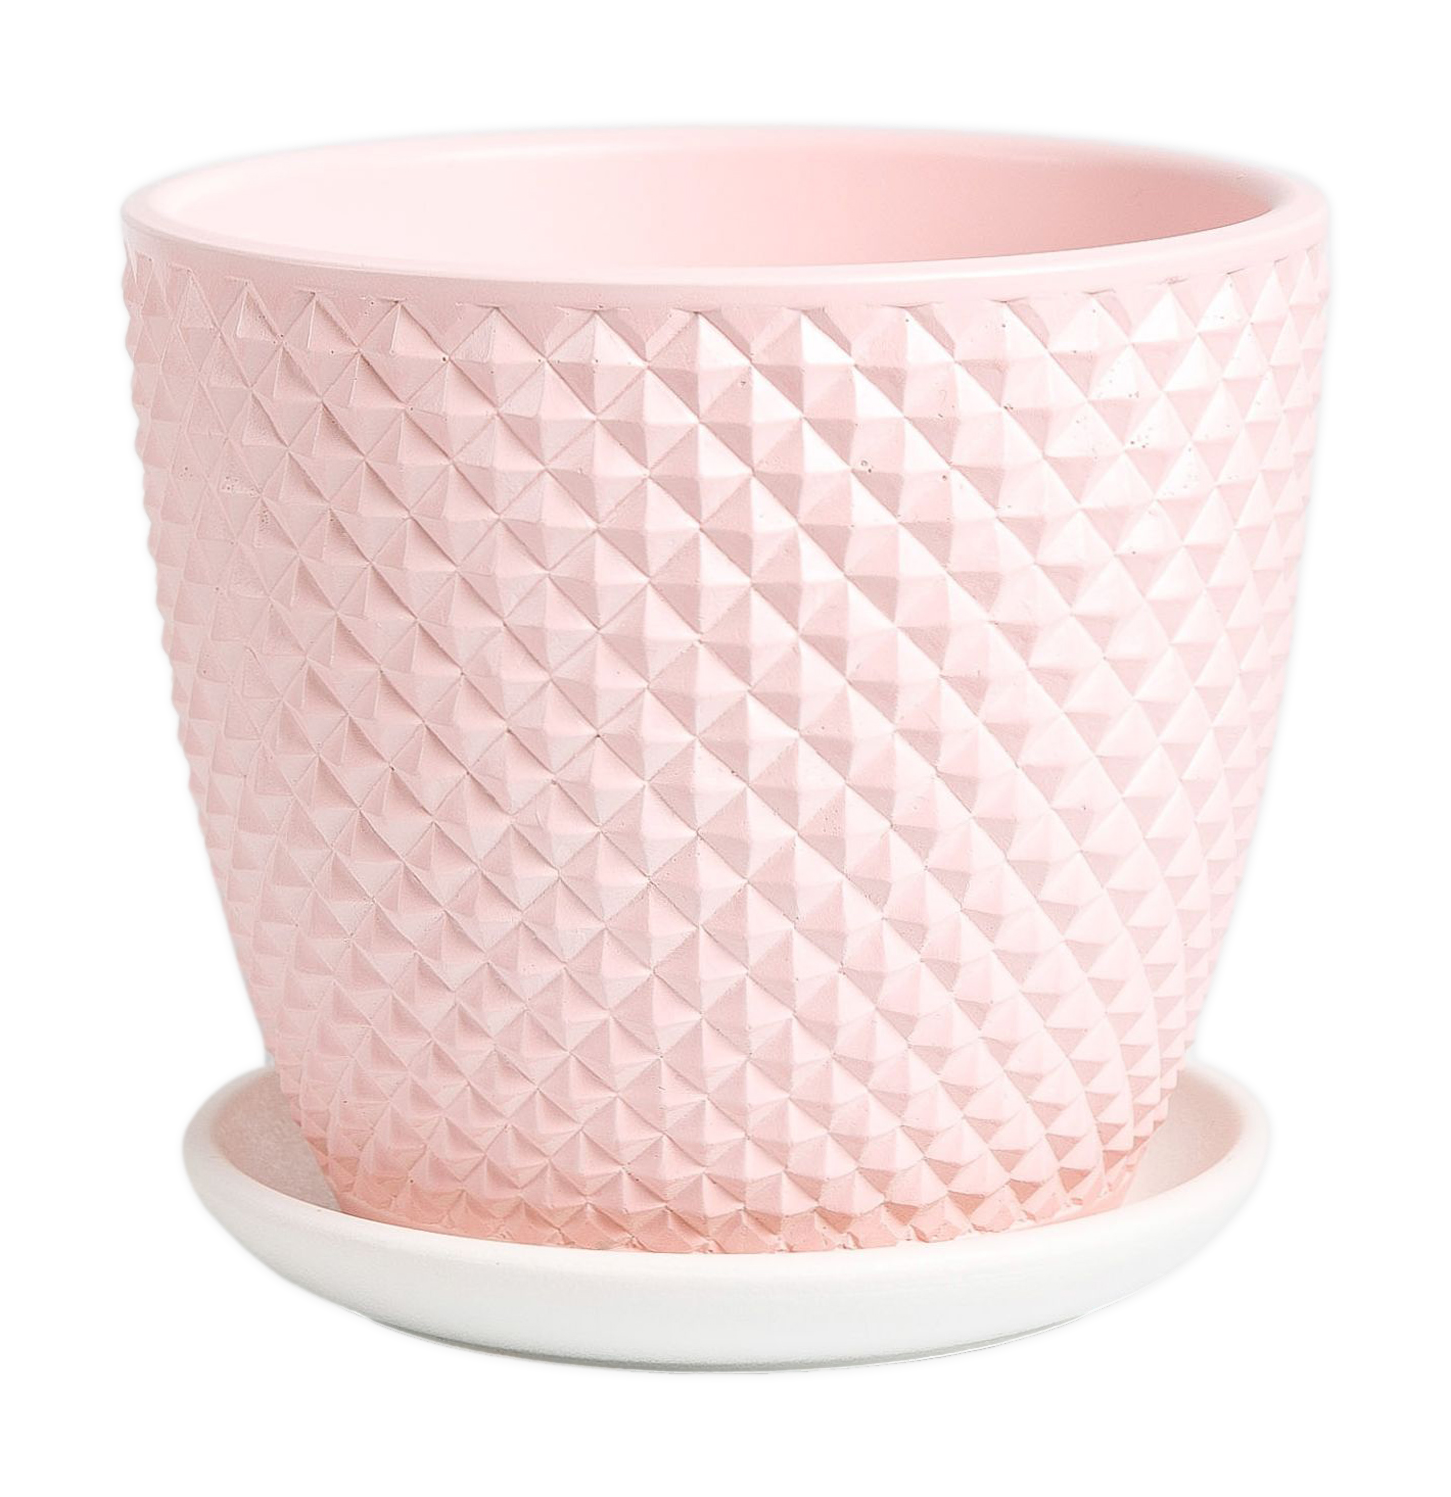 Цветочный горшок Miss Pots Грань КБ-Б2-217-09 1,31 л розовый 1 шт.